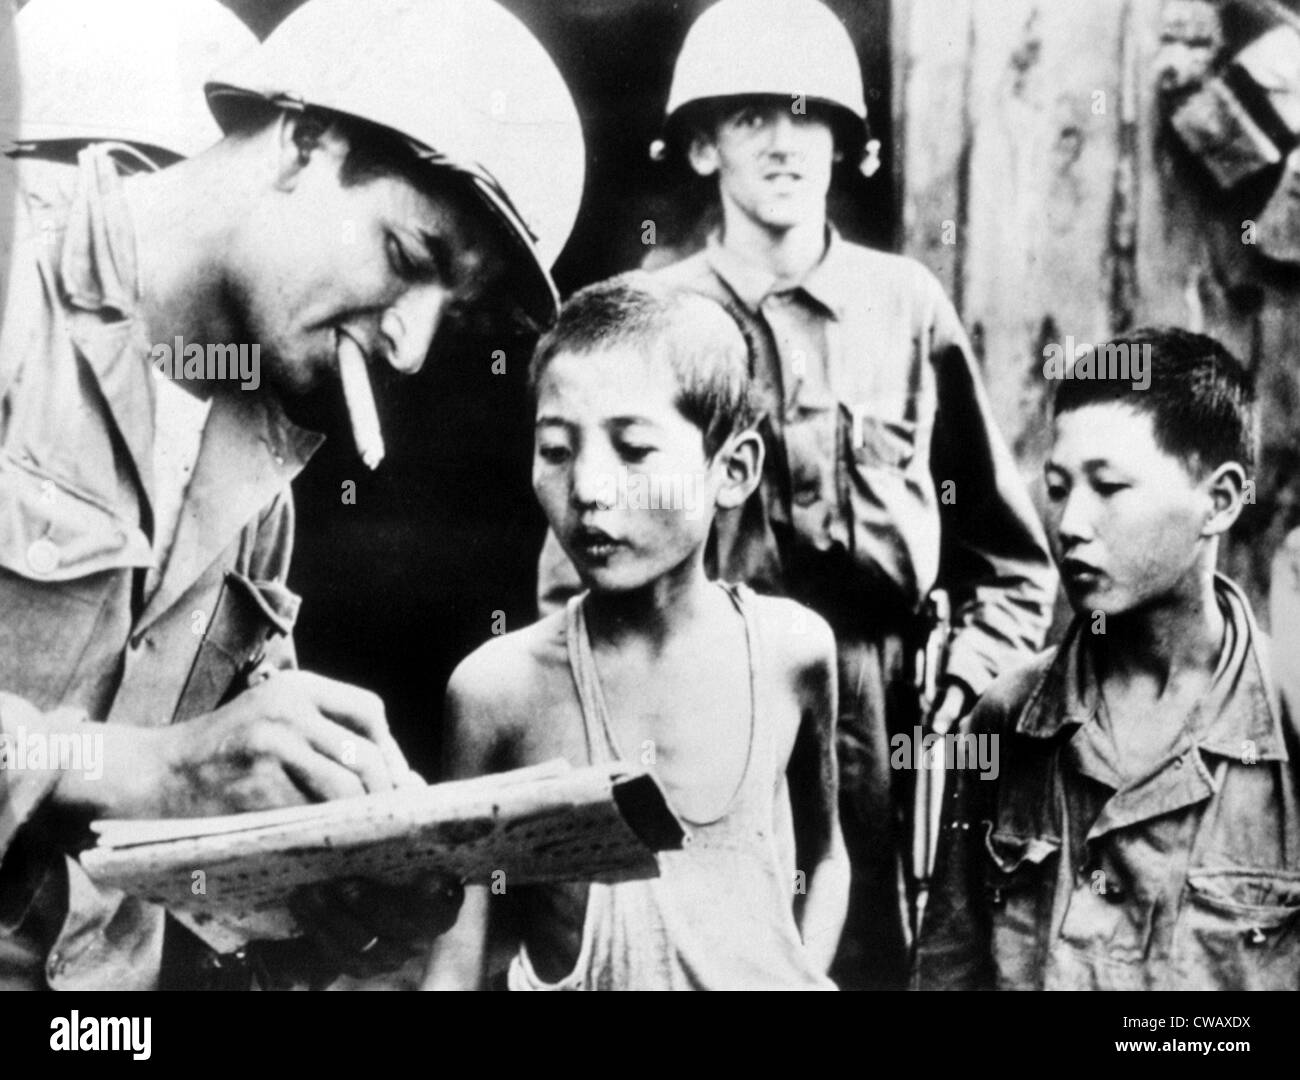 Guerra de Corea: capturaron niños de Corea del Norte está siendo cuestionada por soldado de EE.UU., Corea, 10/06/50. Cortesía: CSU Archives / Everett Foto de stock